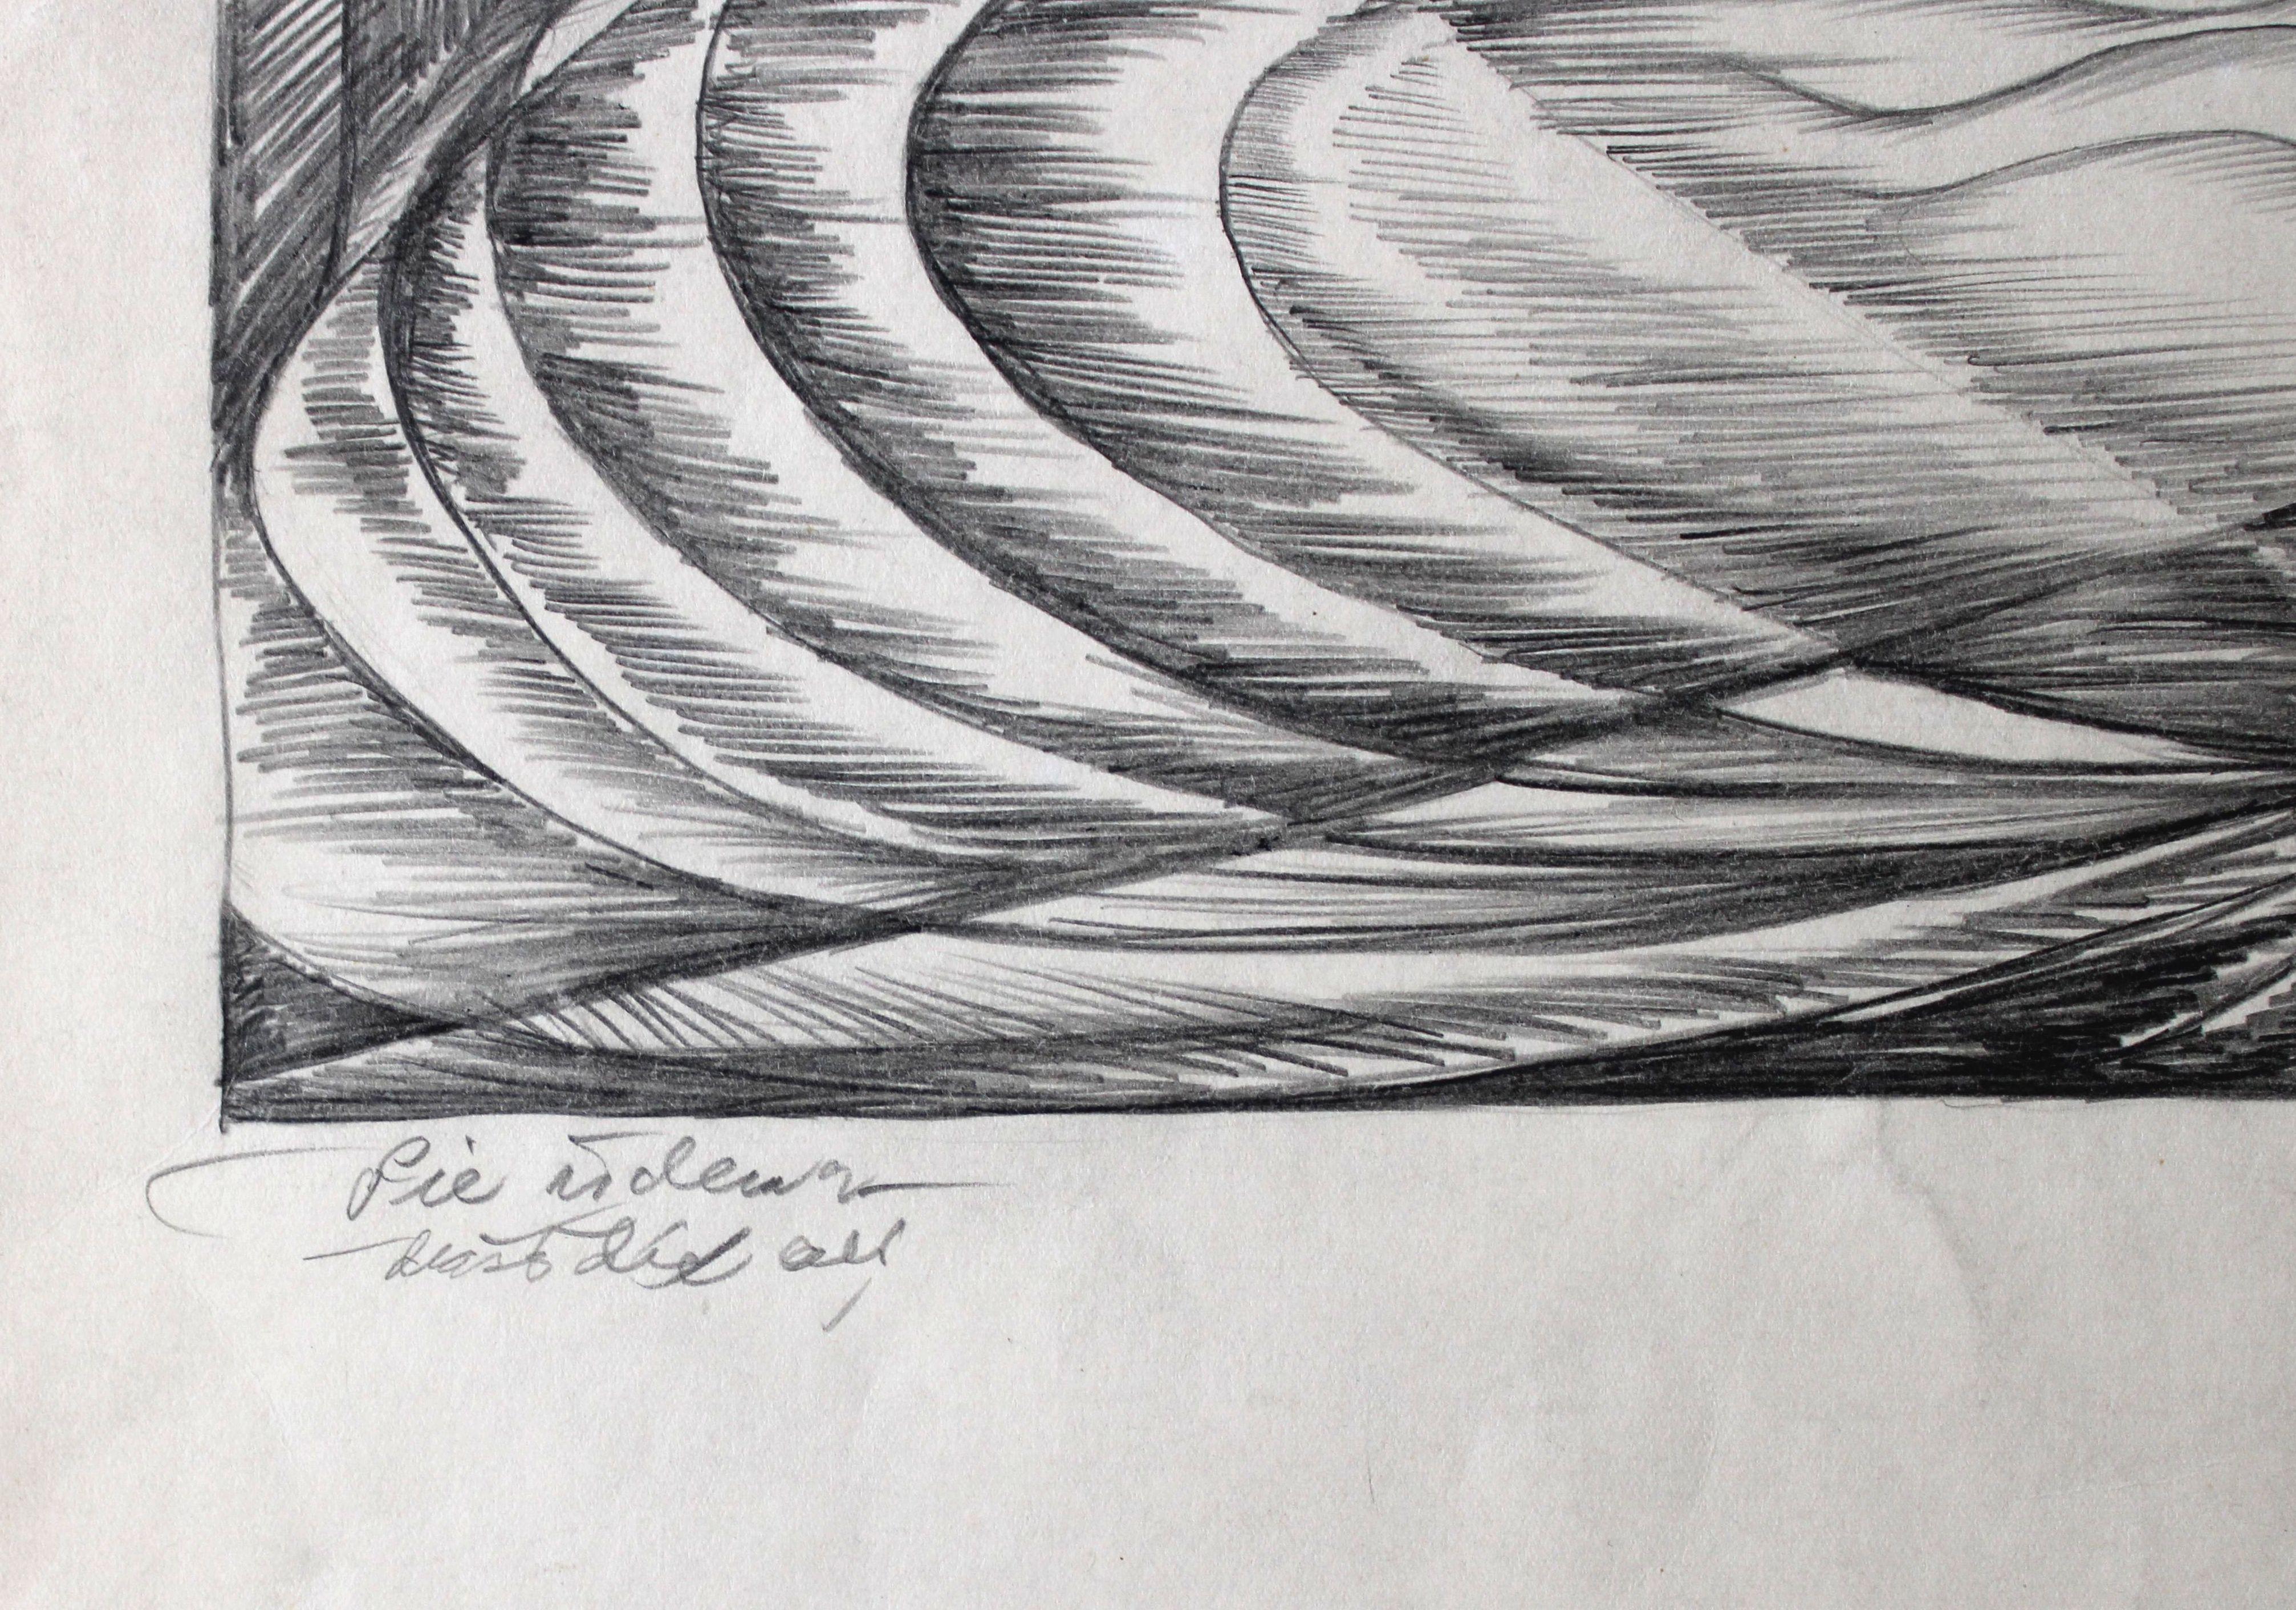 Swallows by the water. 1976, papier, crayon, 45, 5 x 40, 5 cm

Dzidra Ezergaile (1926-2013)
Né à Riga. Les années scolaires alternent avec des travaux d'été à la campagne. En 1947, elle a commencé ses études à la faculté d'architecture de la LVU,